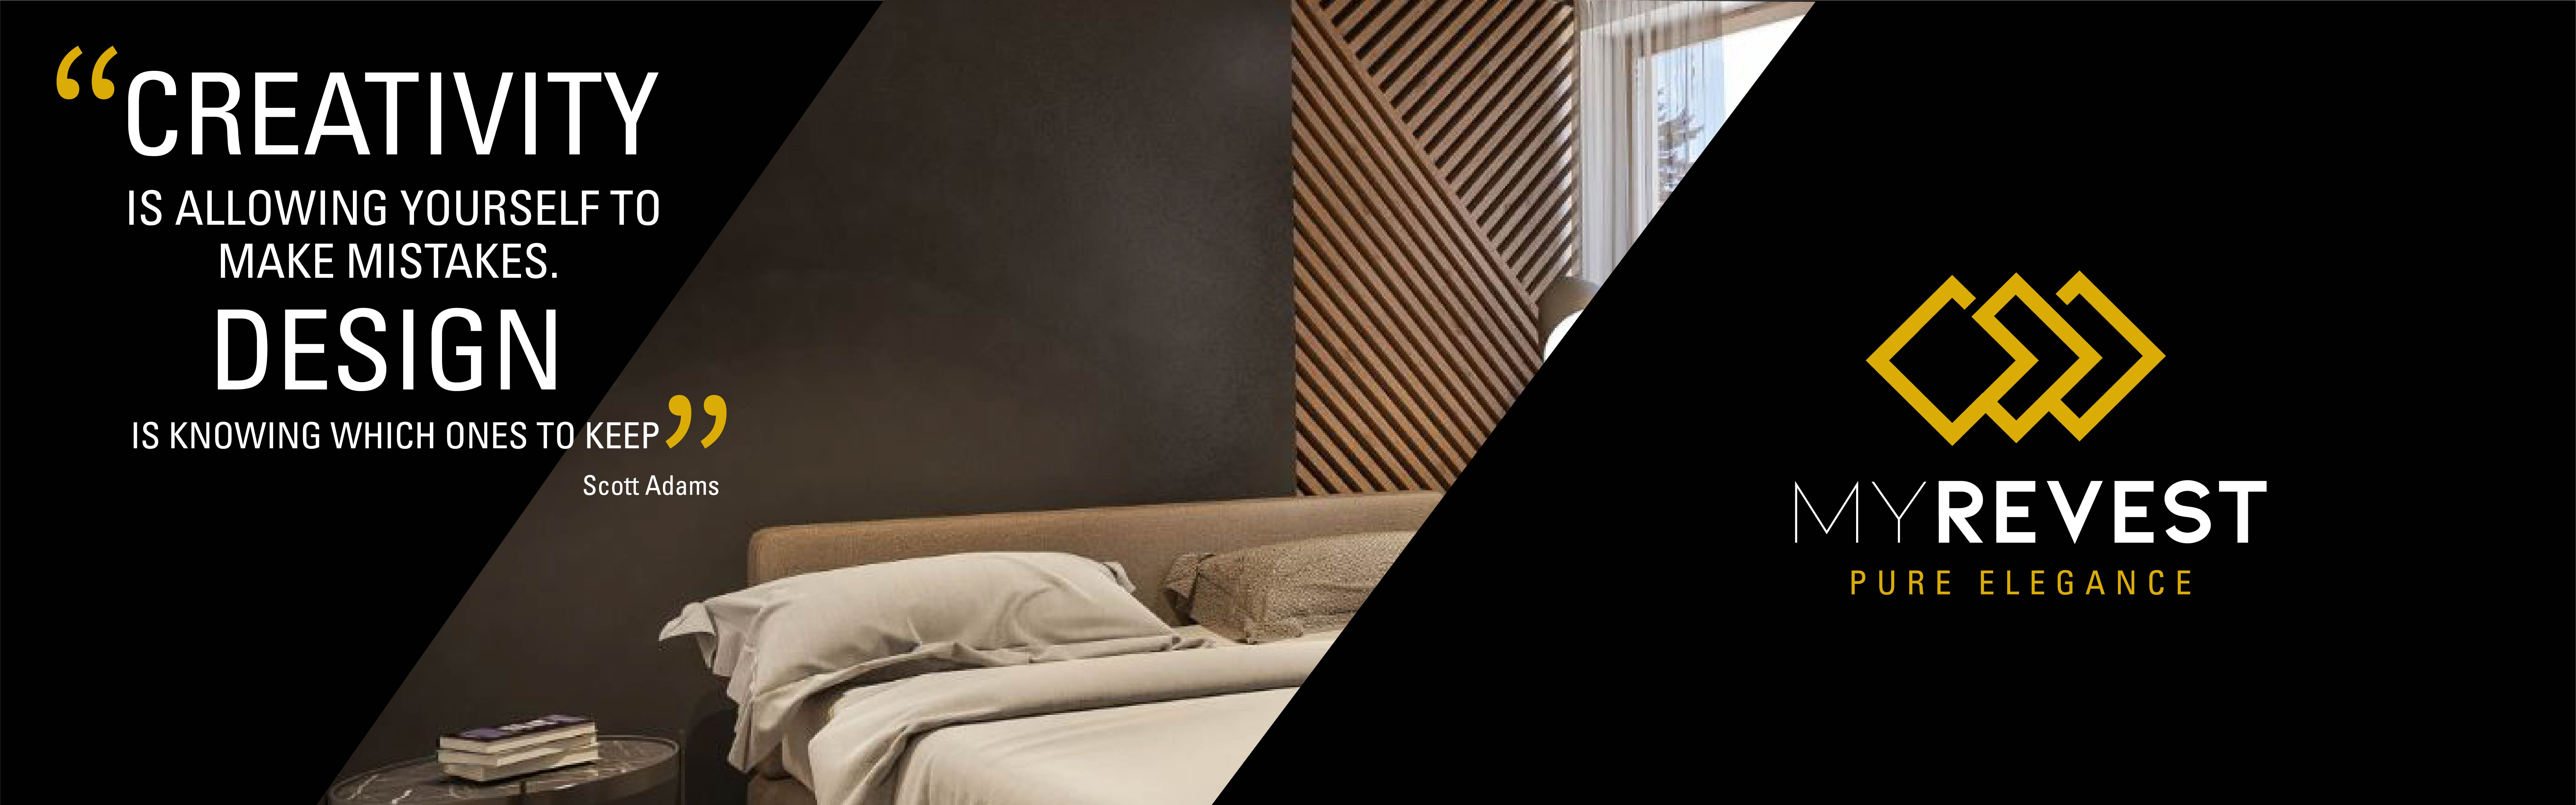 Mikrocementbelægning på væggen i et minimalistisk soveværelse ved siden af MyRevest-logoet